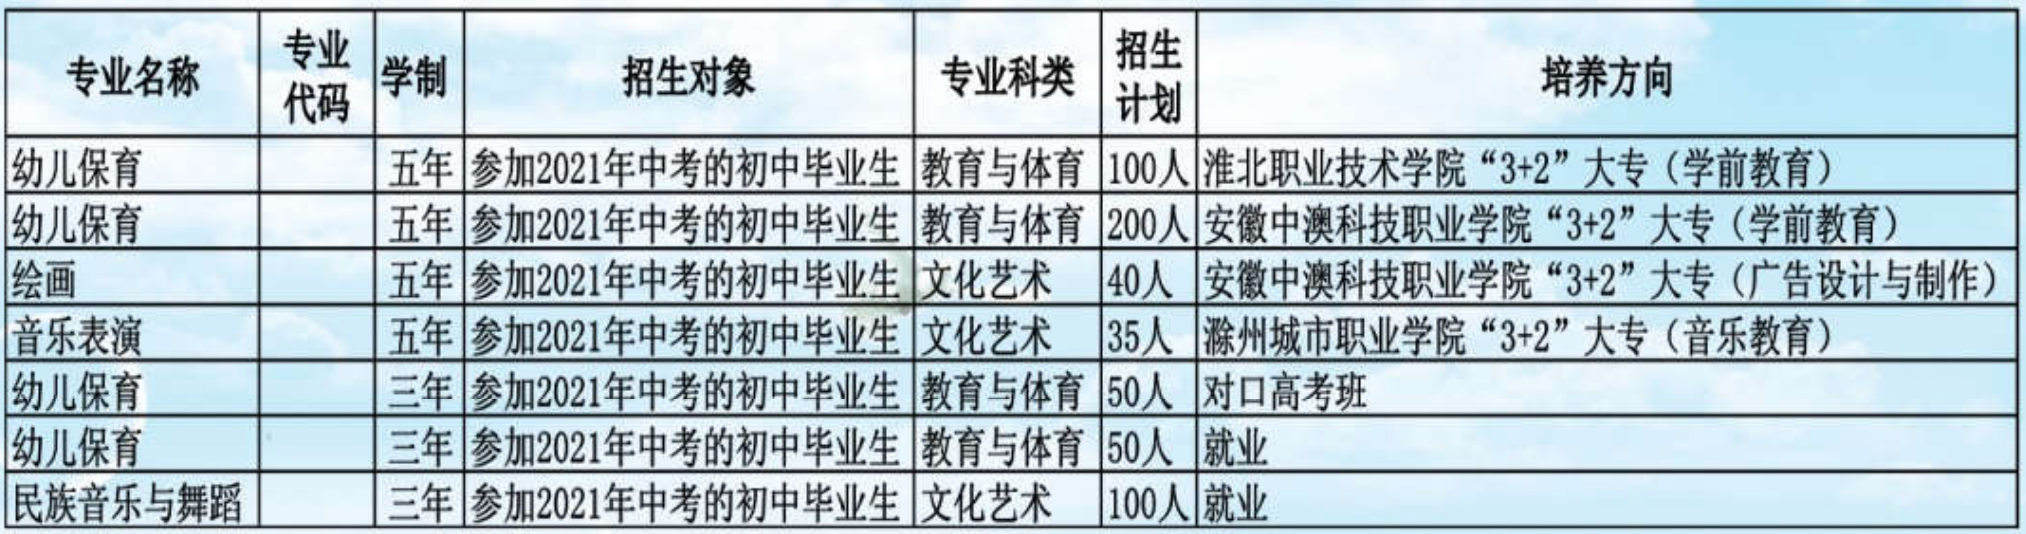 安徽省怀远师范学校2022年招生简章